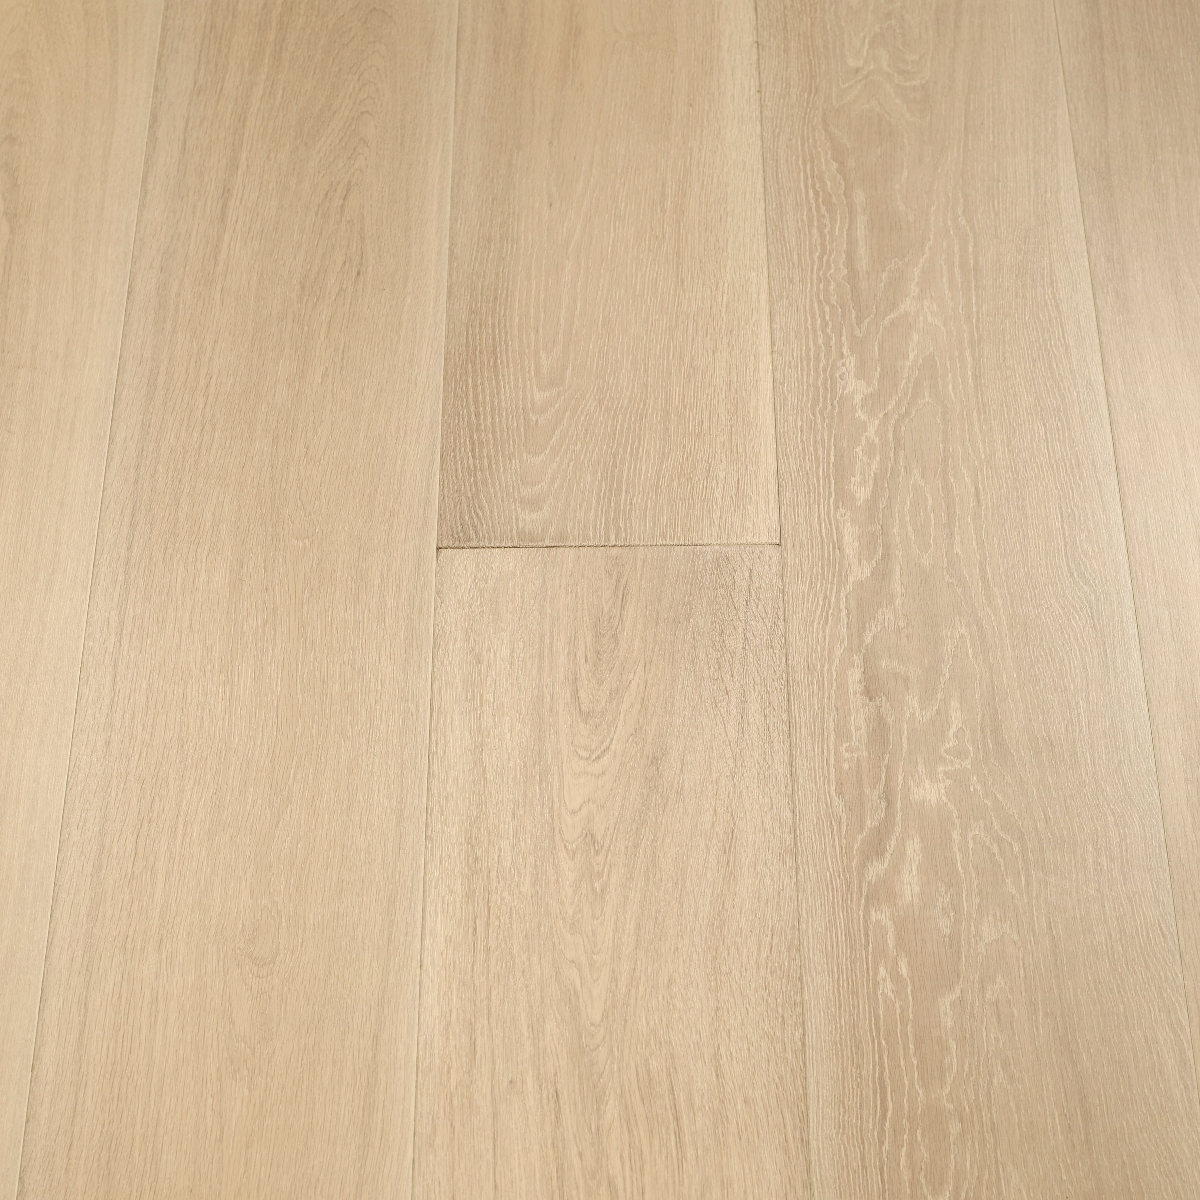 Linen 190mm x 18mm x 1900mm Bespoke Wood Flooring